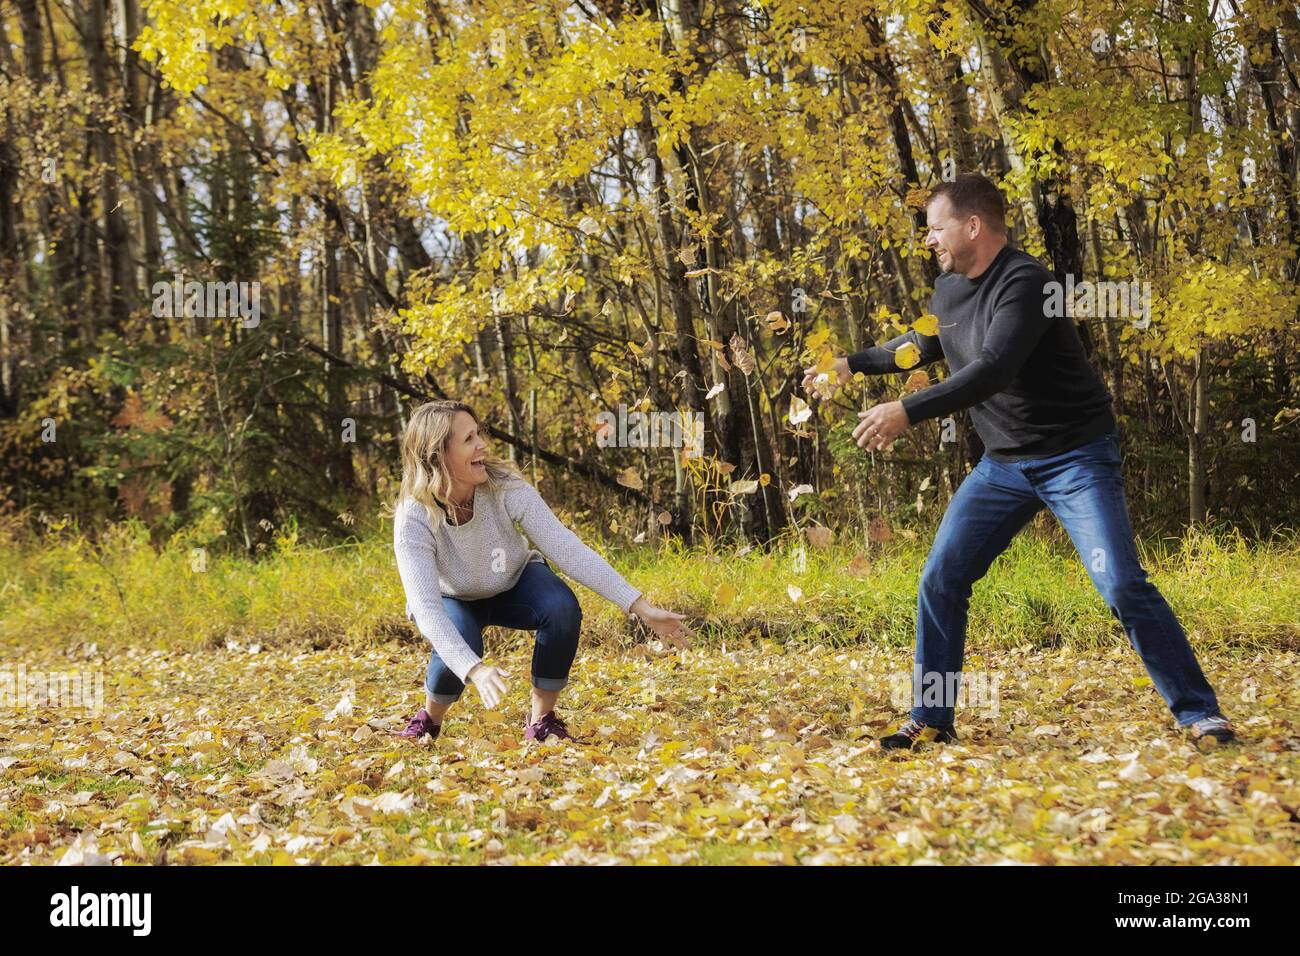 Un couple mature et marié qui passe du temps ensemble dans un parc de la ville pendant la saison d'automne, s'amusant à jeter des feuilles mortes les unes contre les autres Banque D'Images